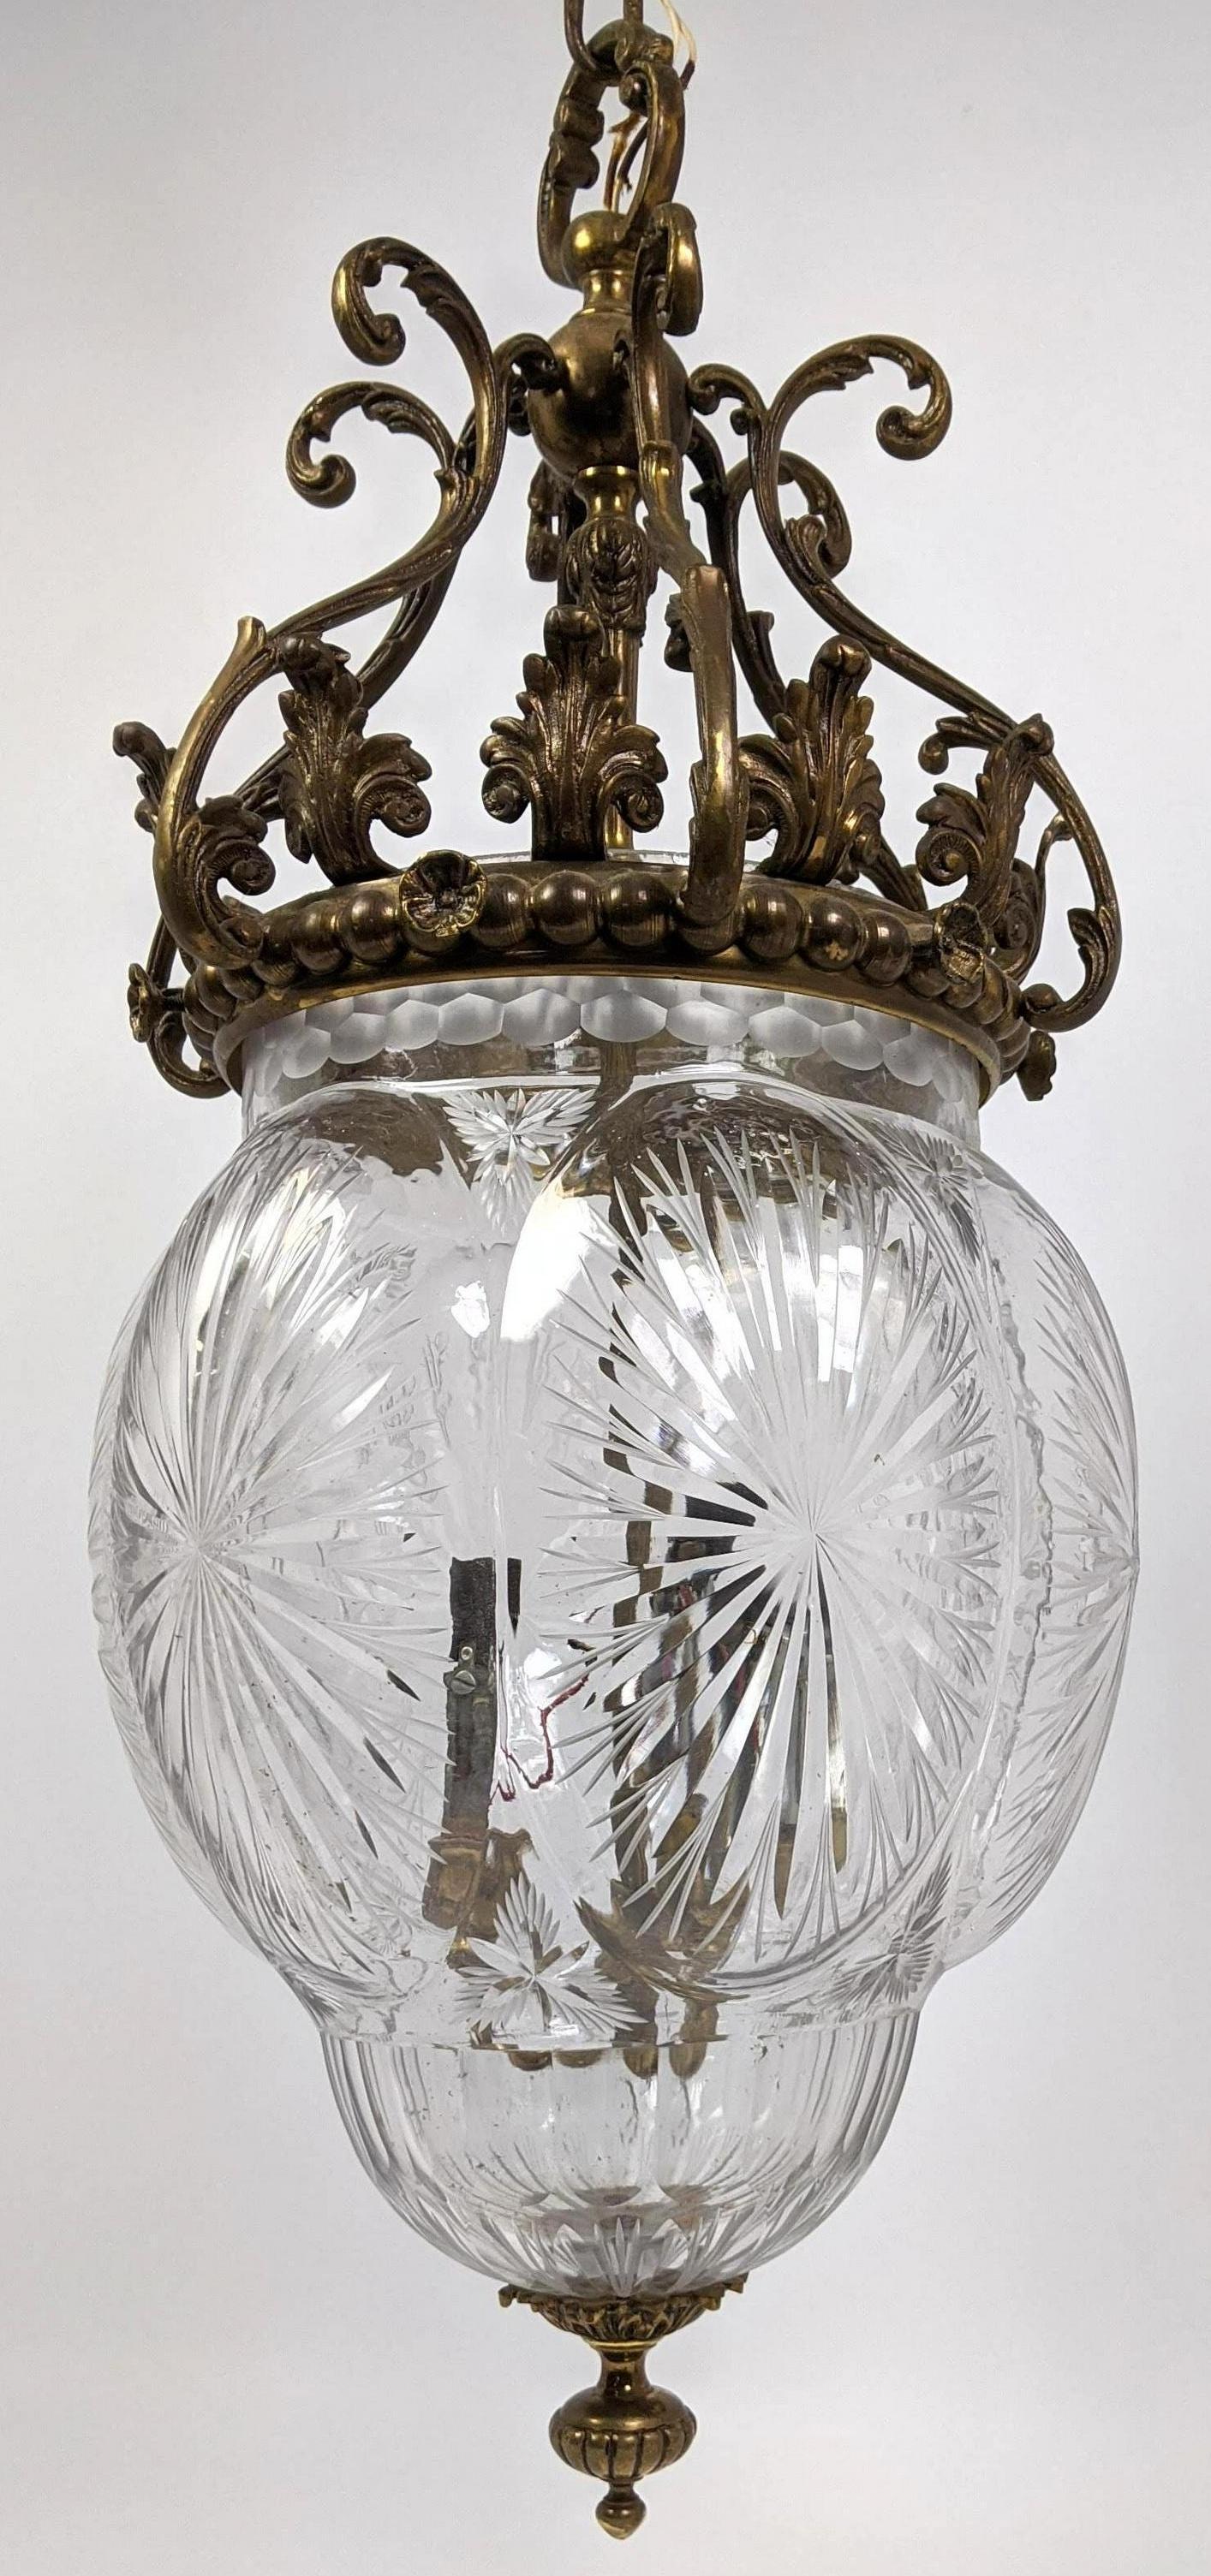 Belle Époque Wonderful Bronze Cut Crystal Lantern Hanging Pendant Light Fixture Chandelier For Sale